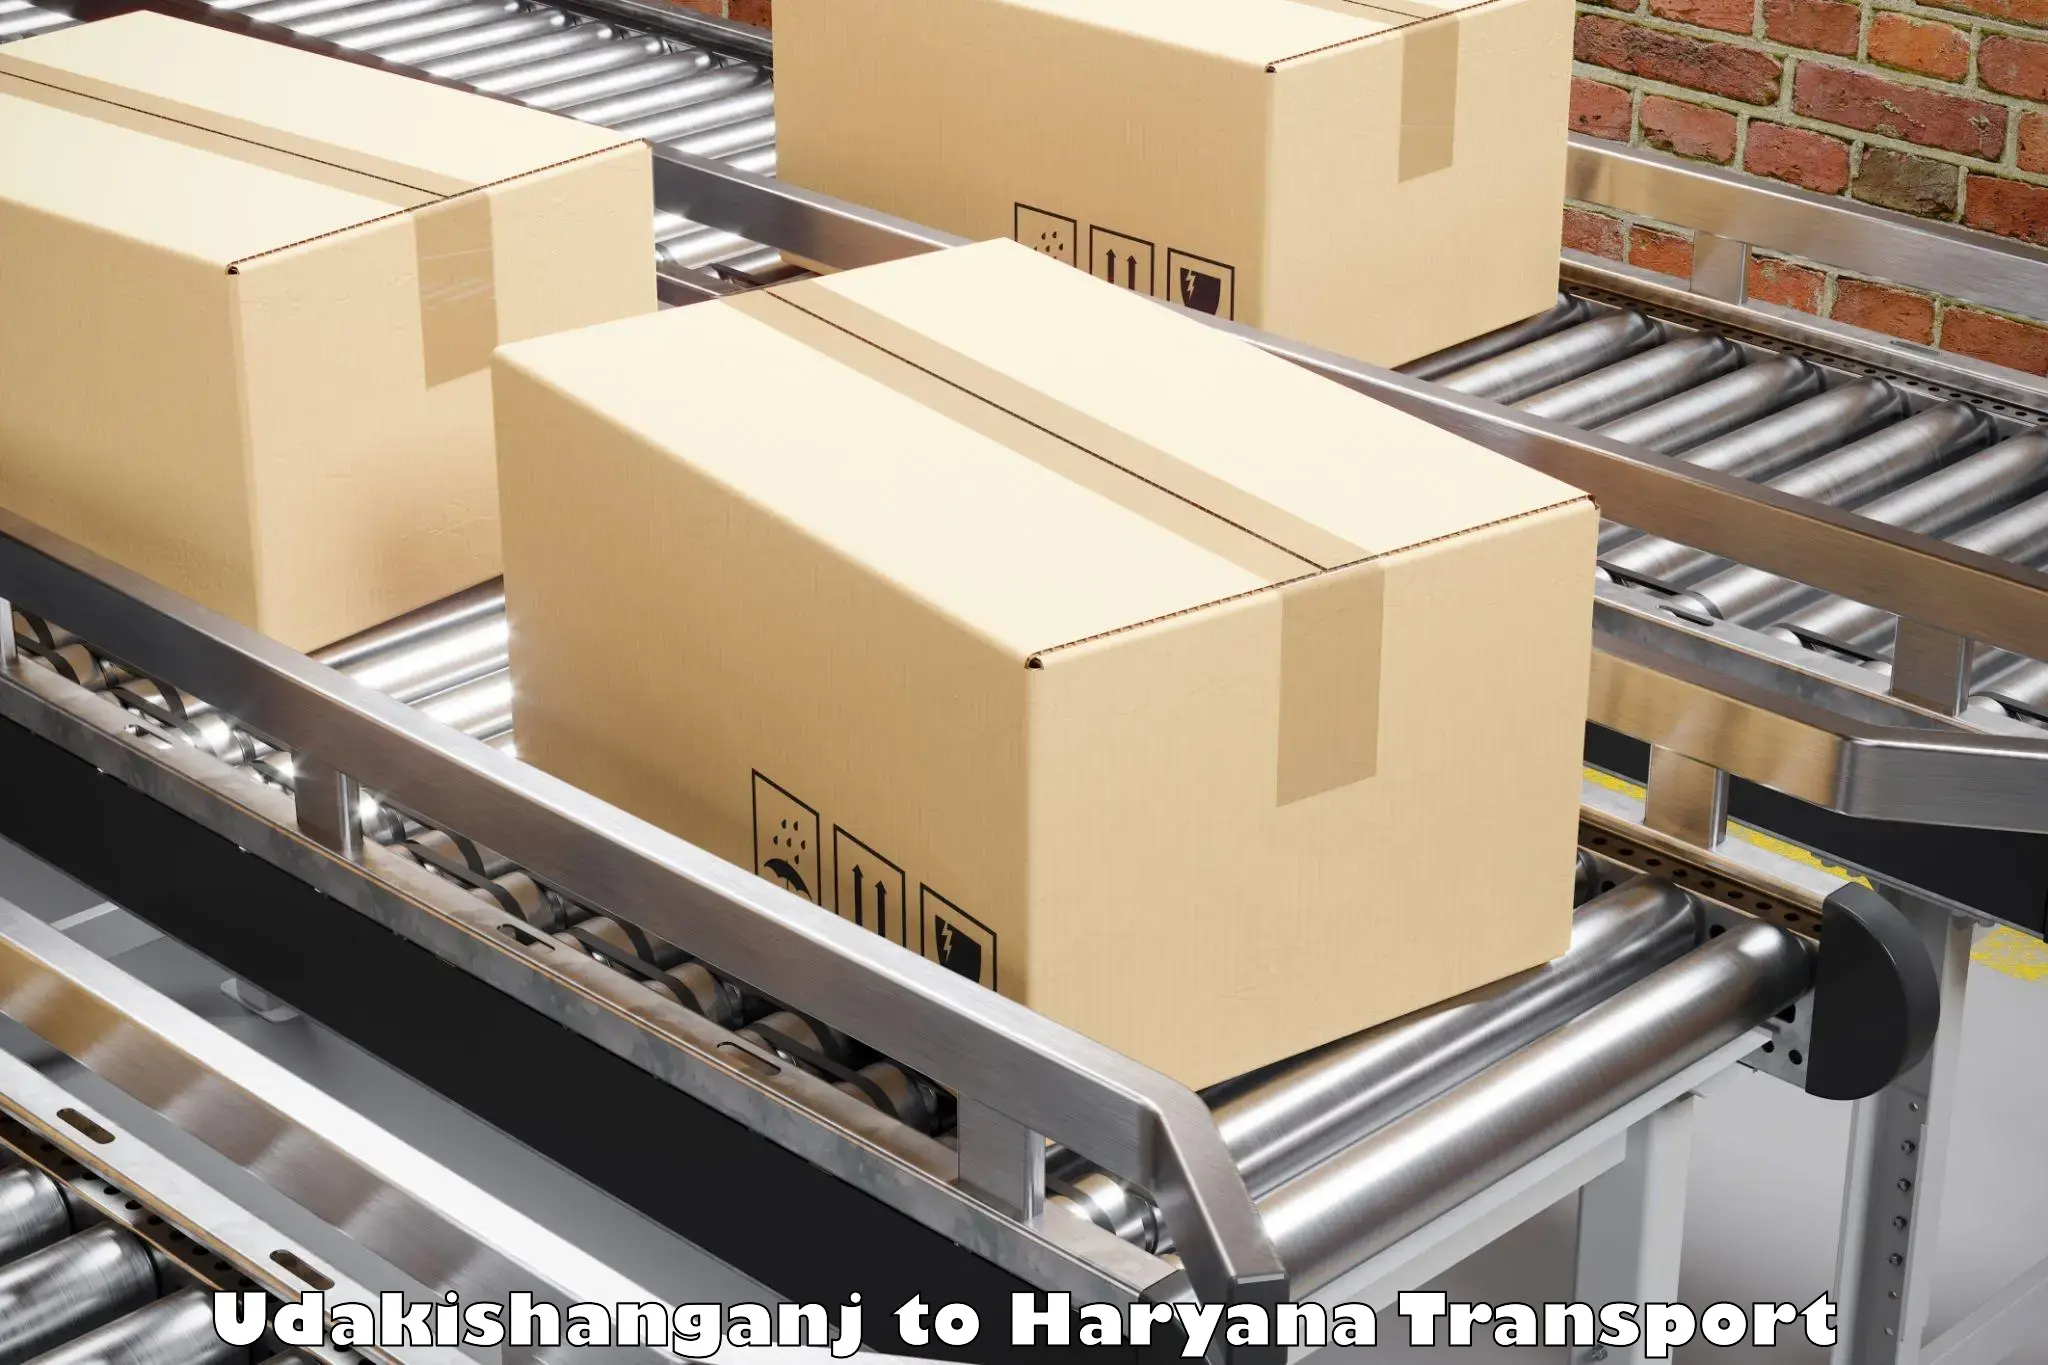 Cargo transportation services Udakishanganj to Panipat